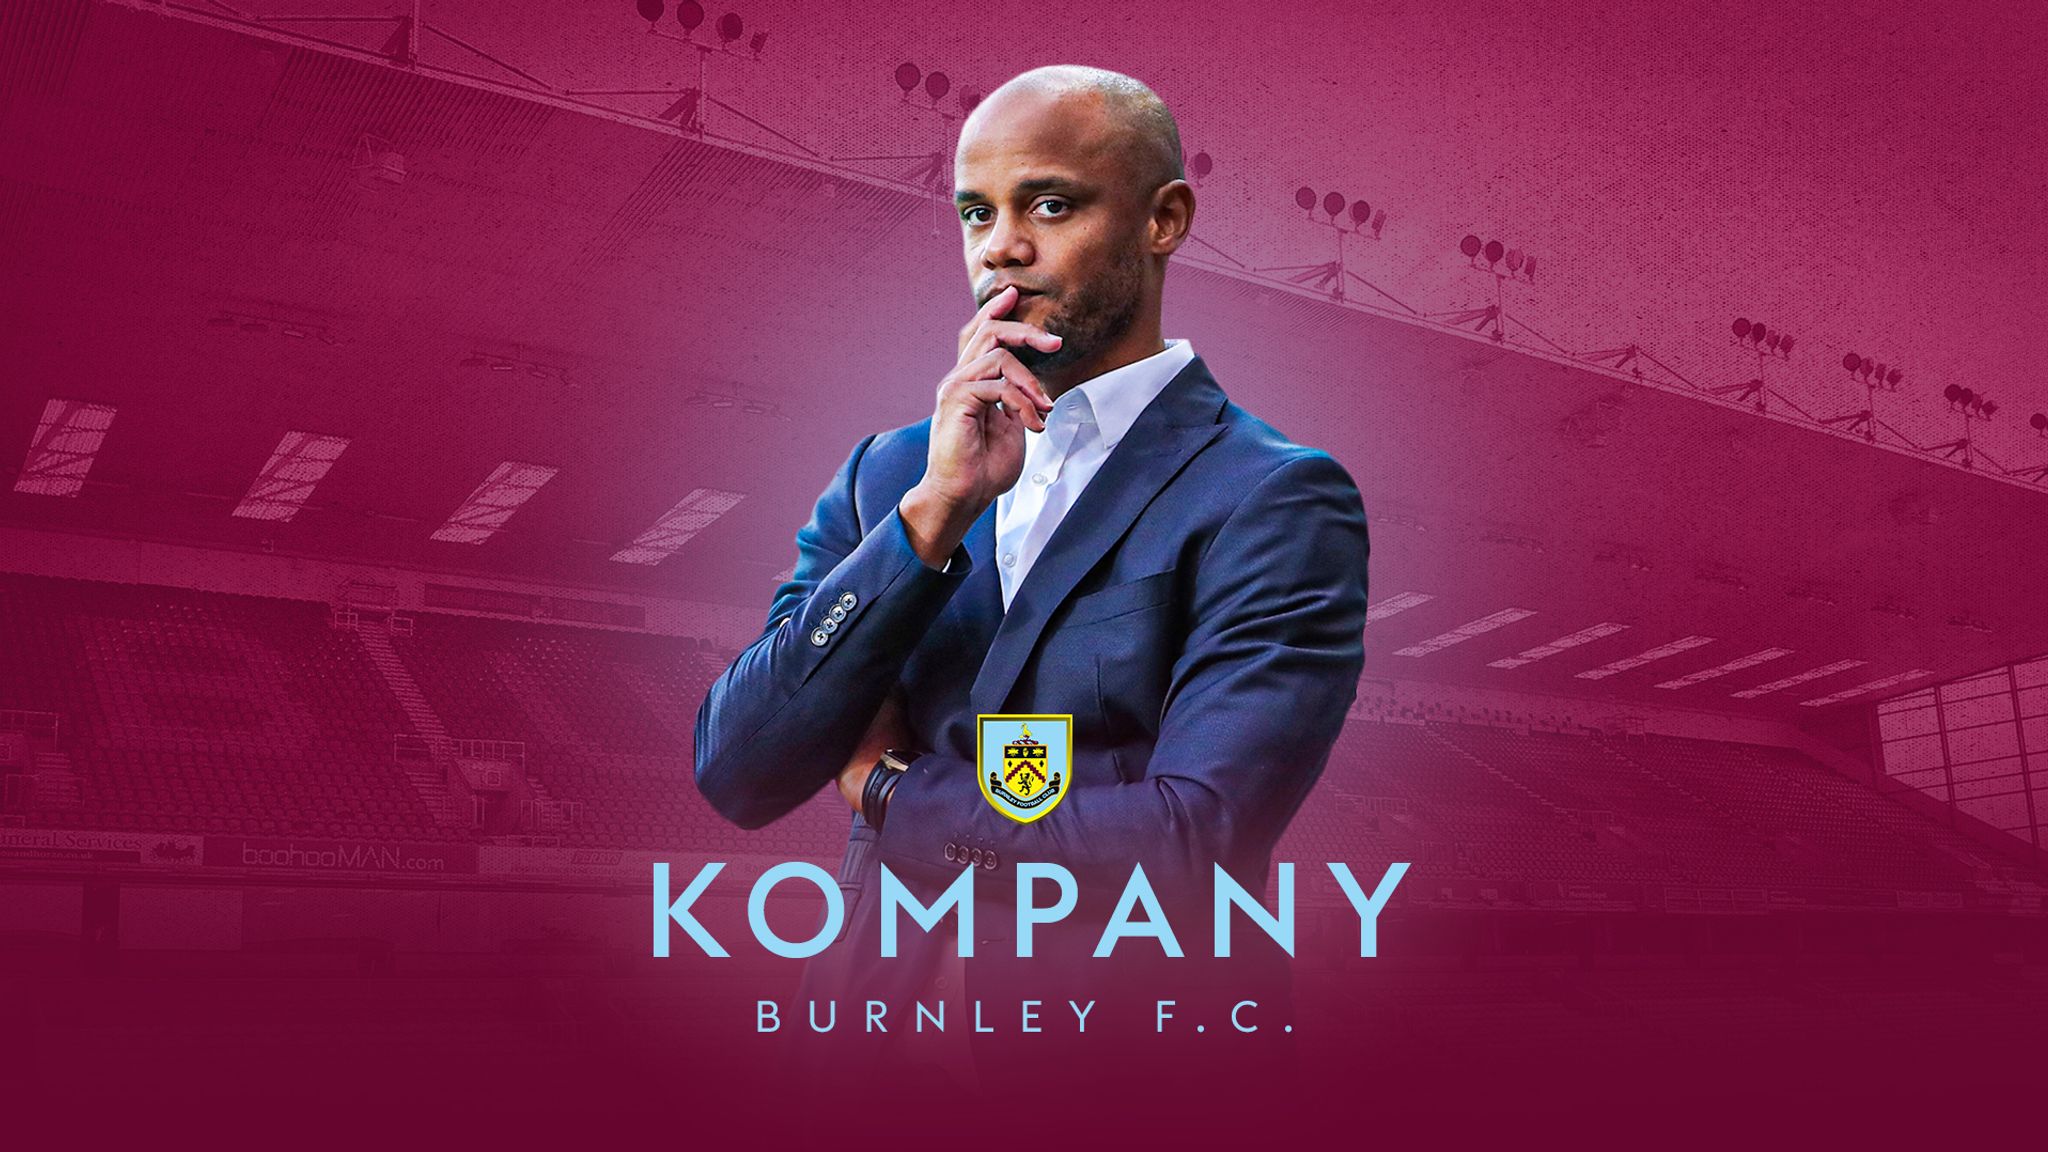  Vincent Kompany đã chọn một nhiệm vụ khó khăn tại Burnley